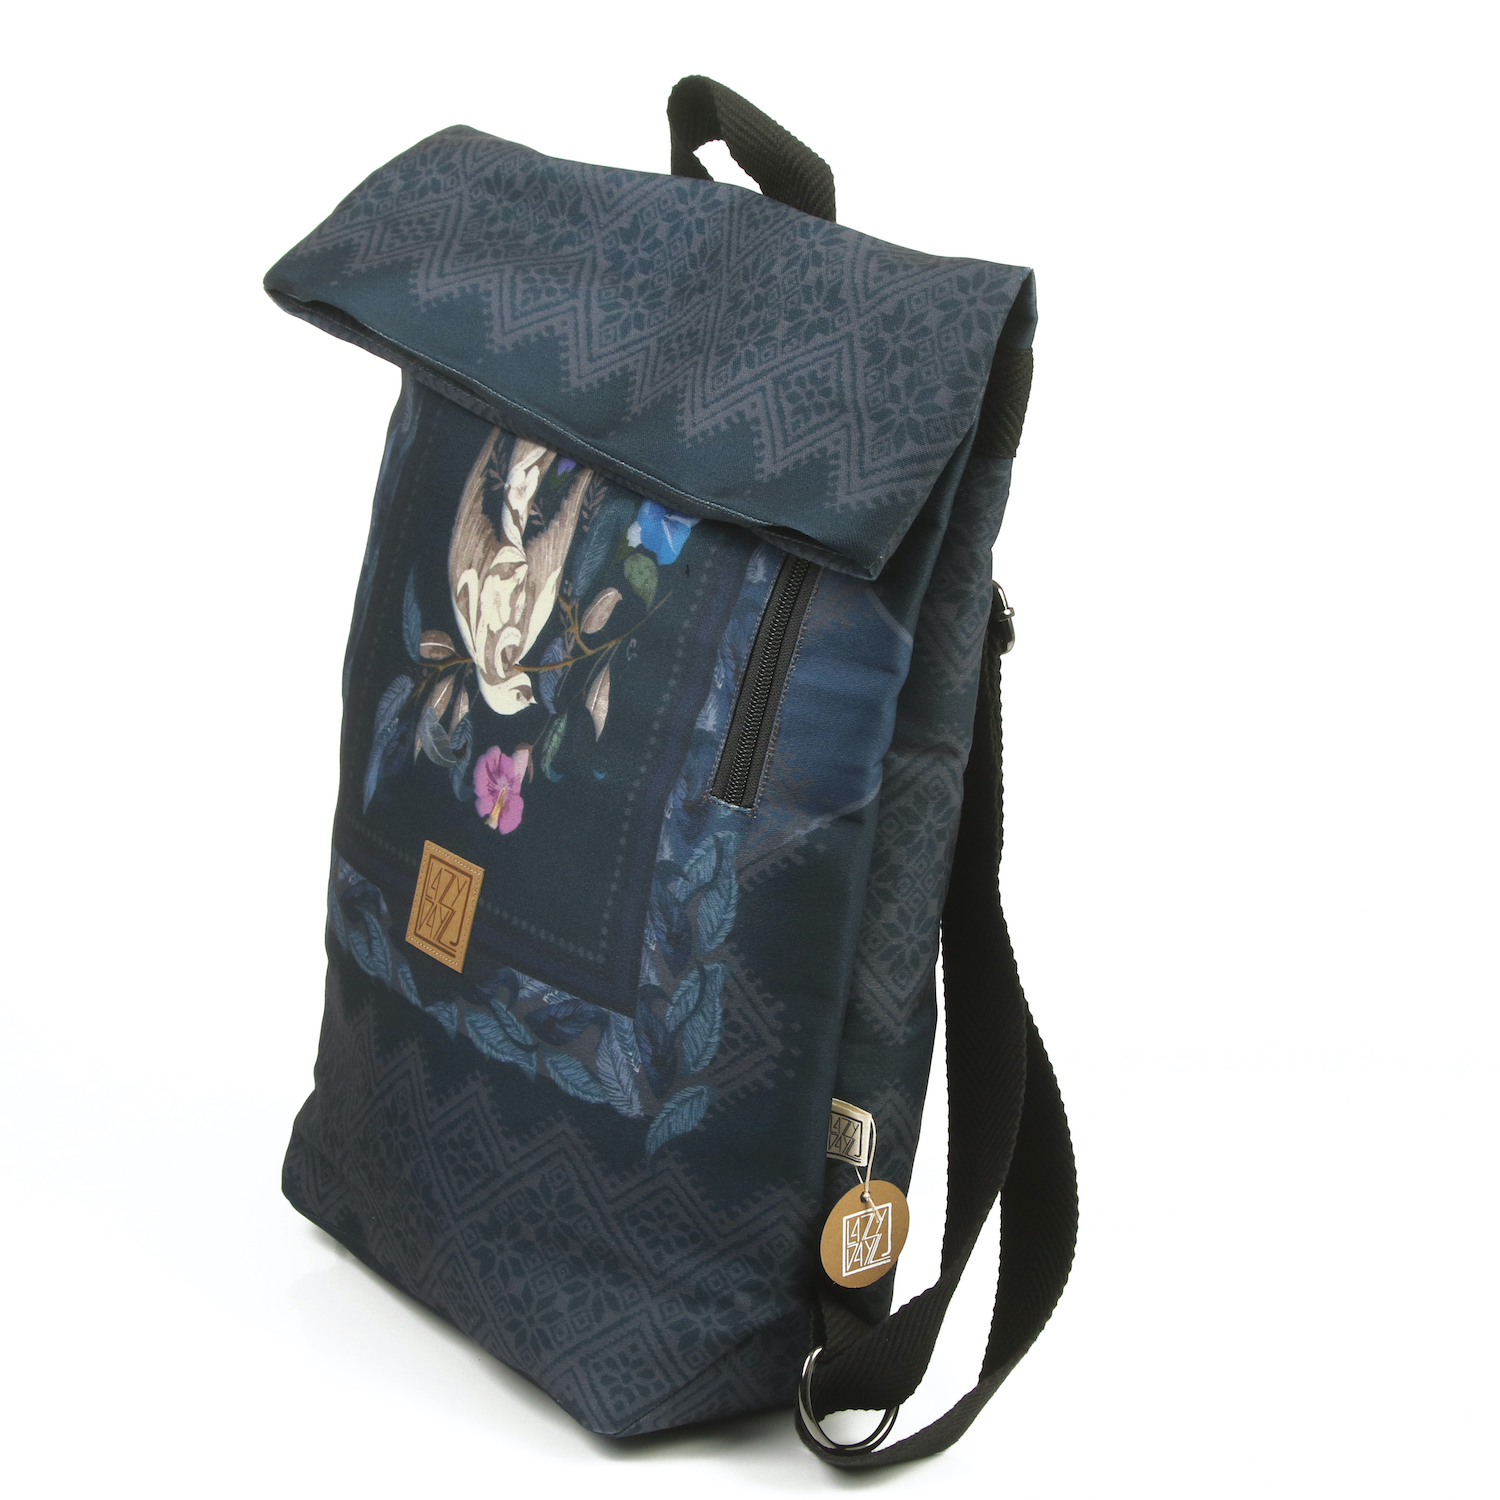 LazyDayz Designs Backpack γυναικείος σάκος πλάτης χειροποίητος bb0801b